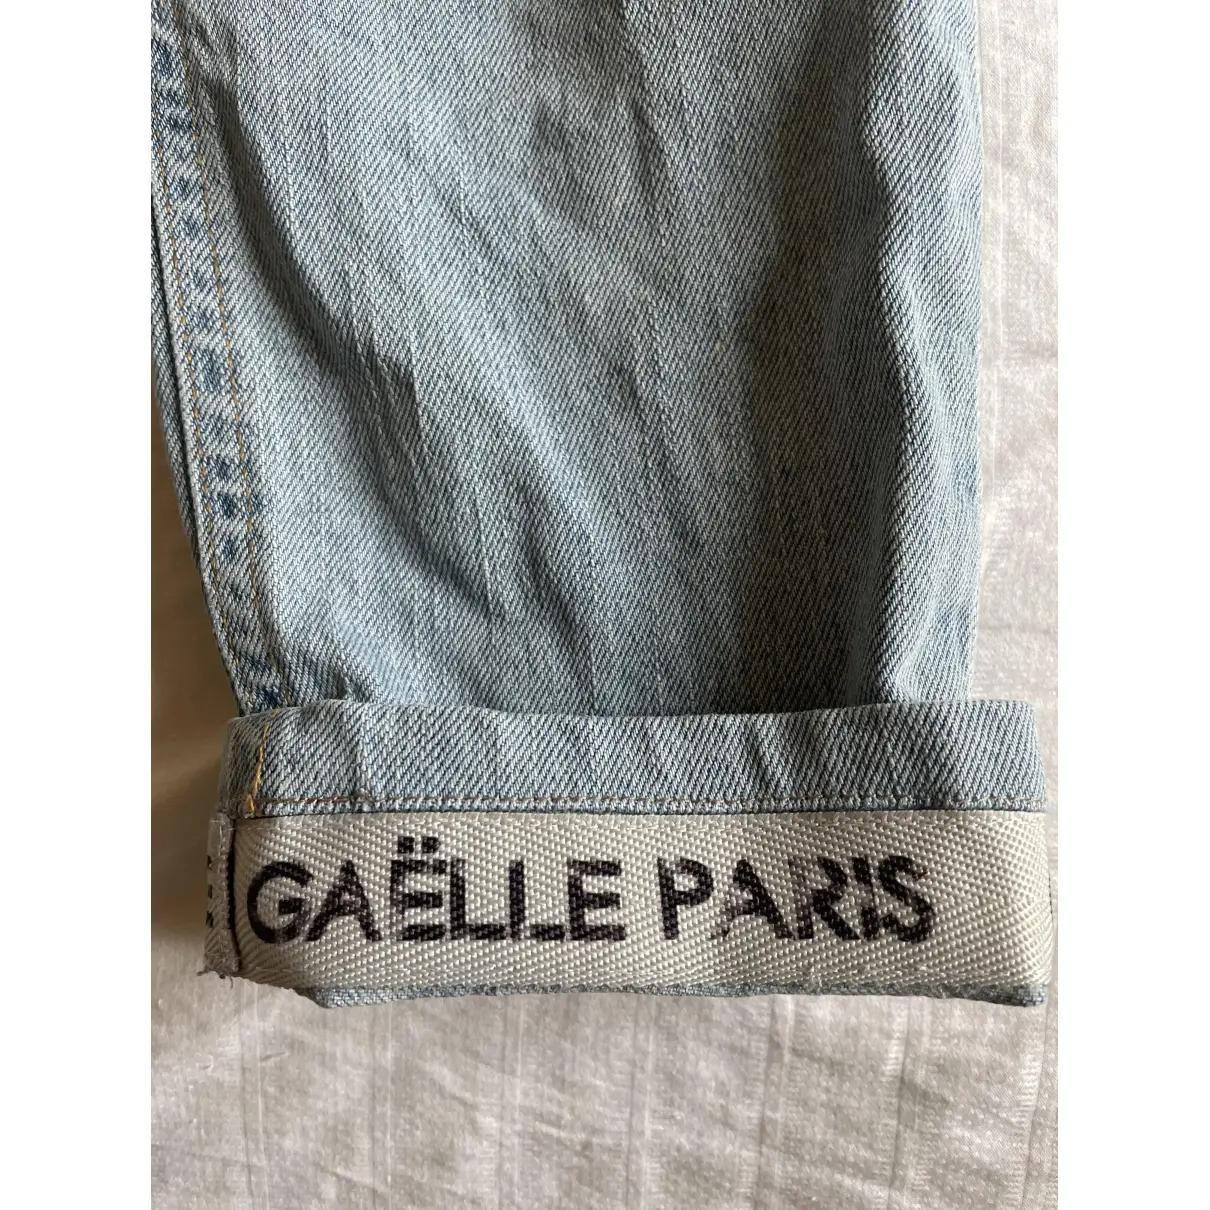 Buy Gaelle Bonheur Slim jeans online